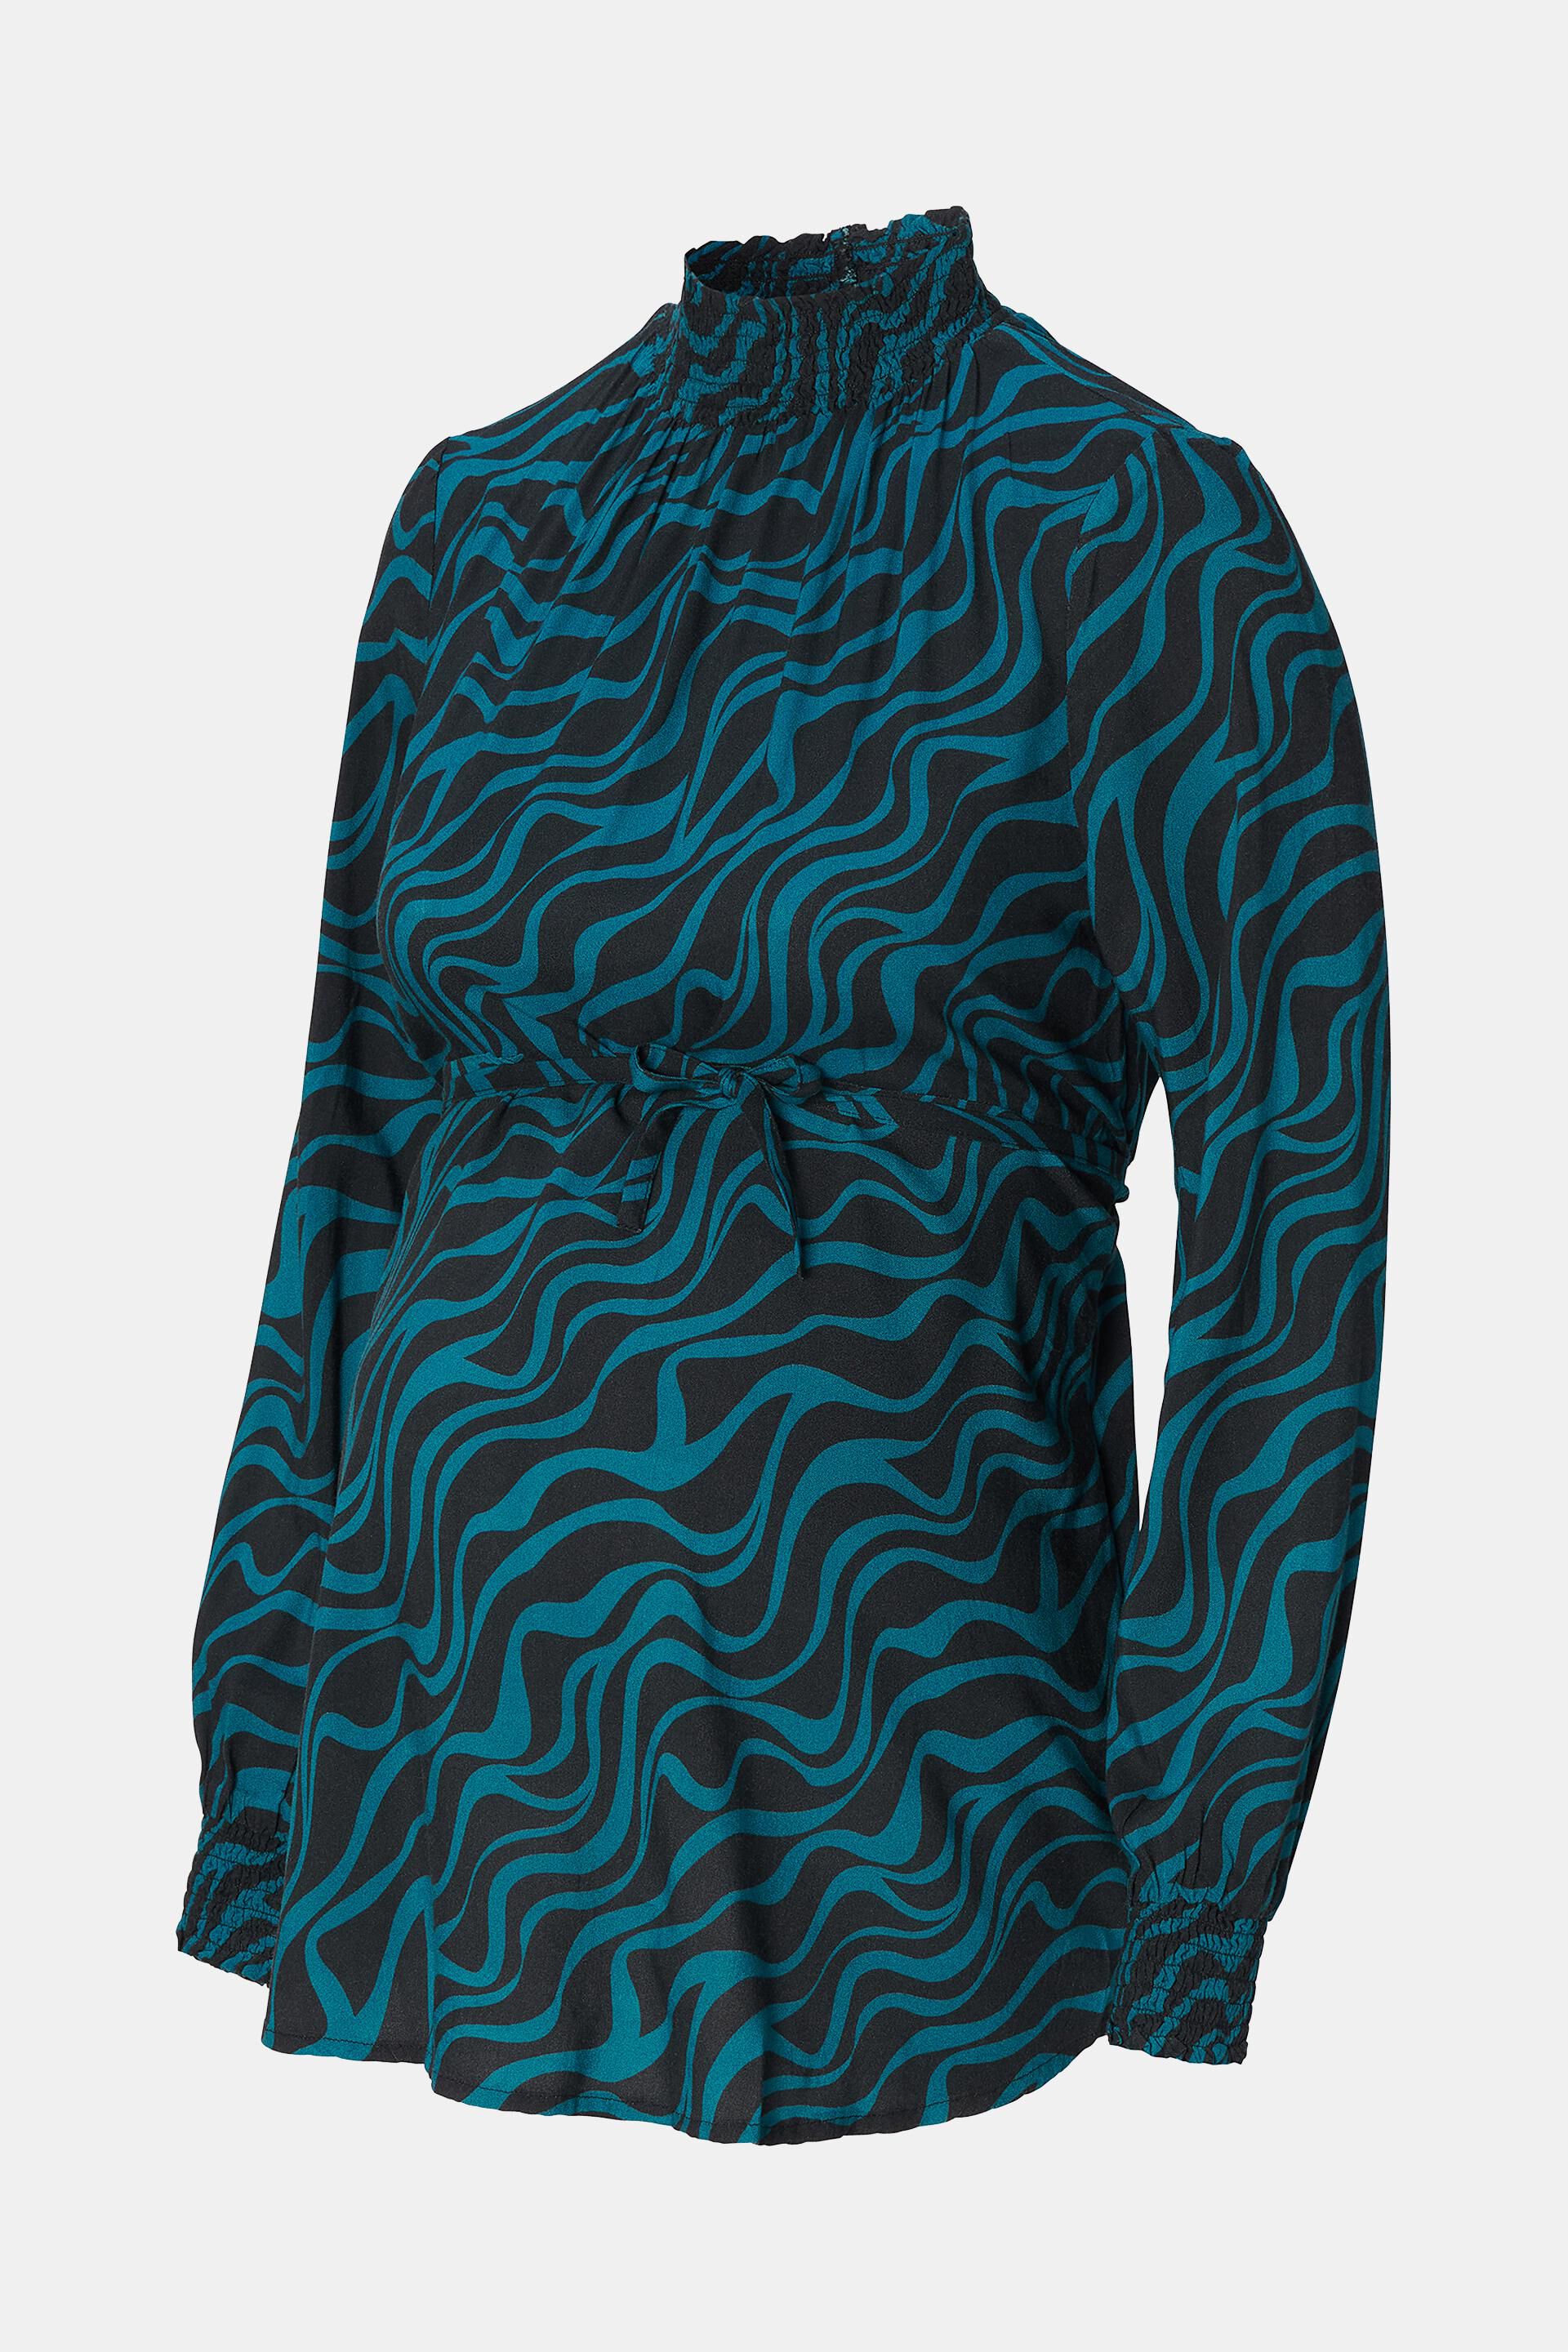 ESPRIT - Bluse mit Muster Online und Shop in Stehkragen unserem